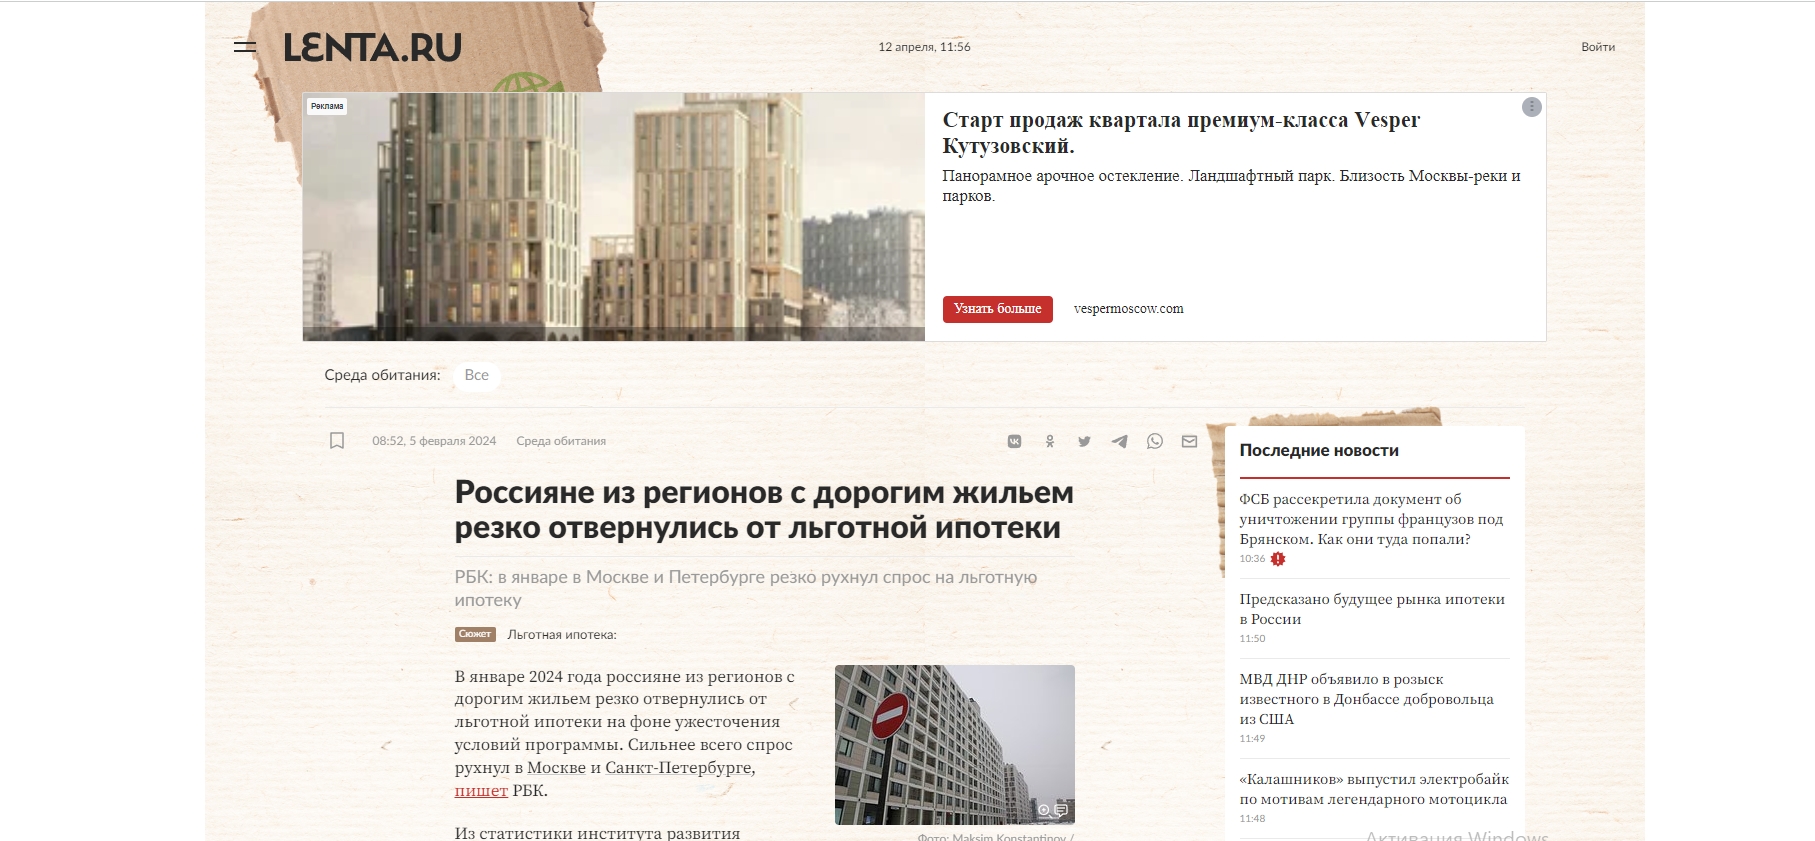 Россияне из регионов с дорогим жильем резко отвернулись от льготной ипотеки